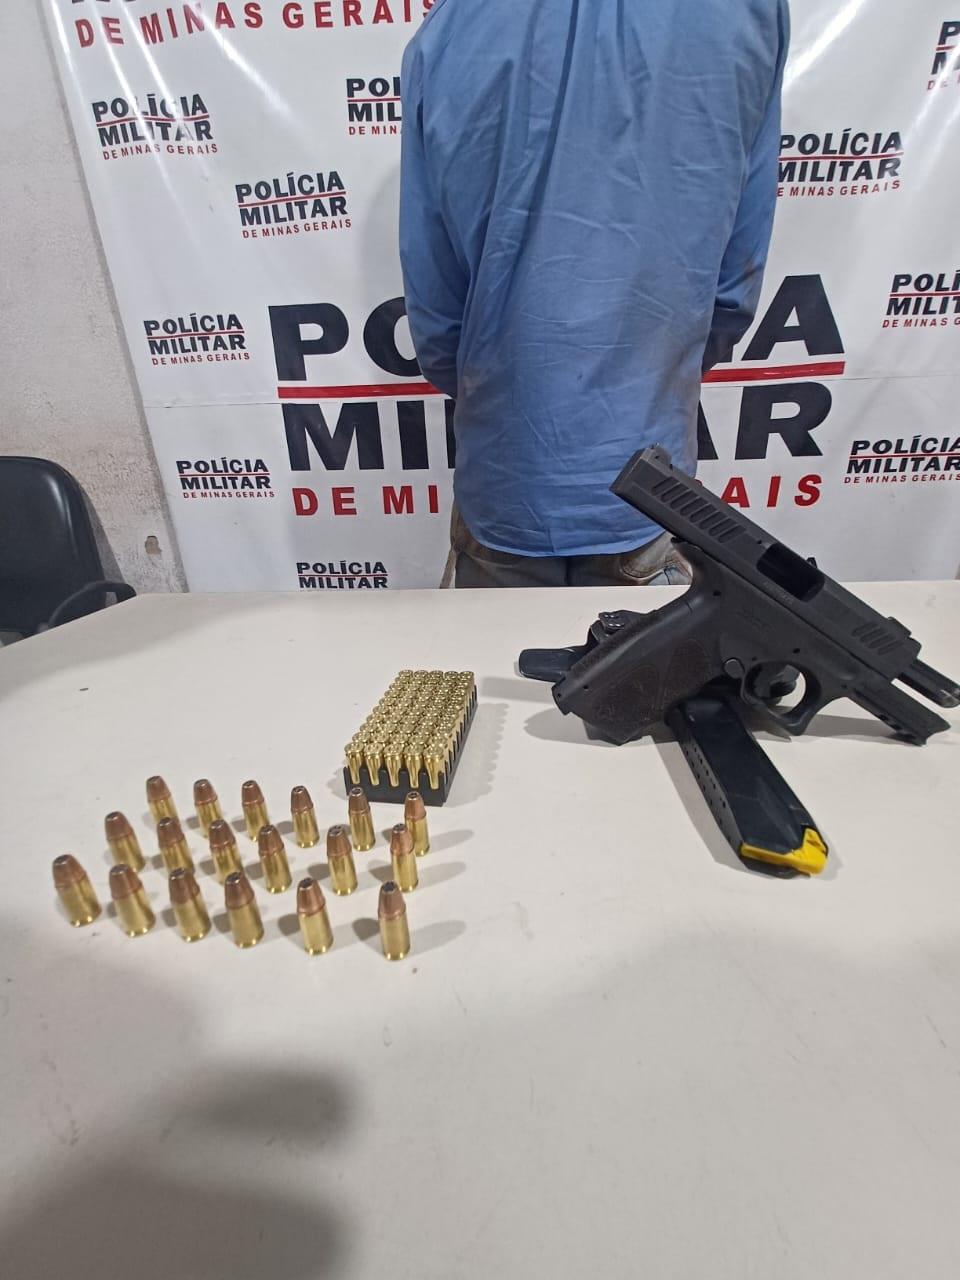 Arma e munições foram levadas à Delegacia juntamente com o suspeito, que alegou ter o registro da pistola, mas não apresentou à PM (Foto/Divulgação)